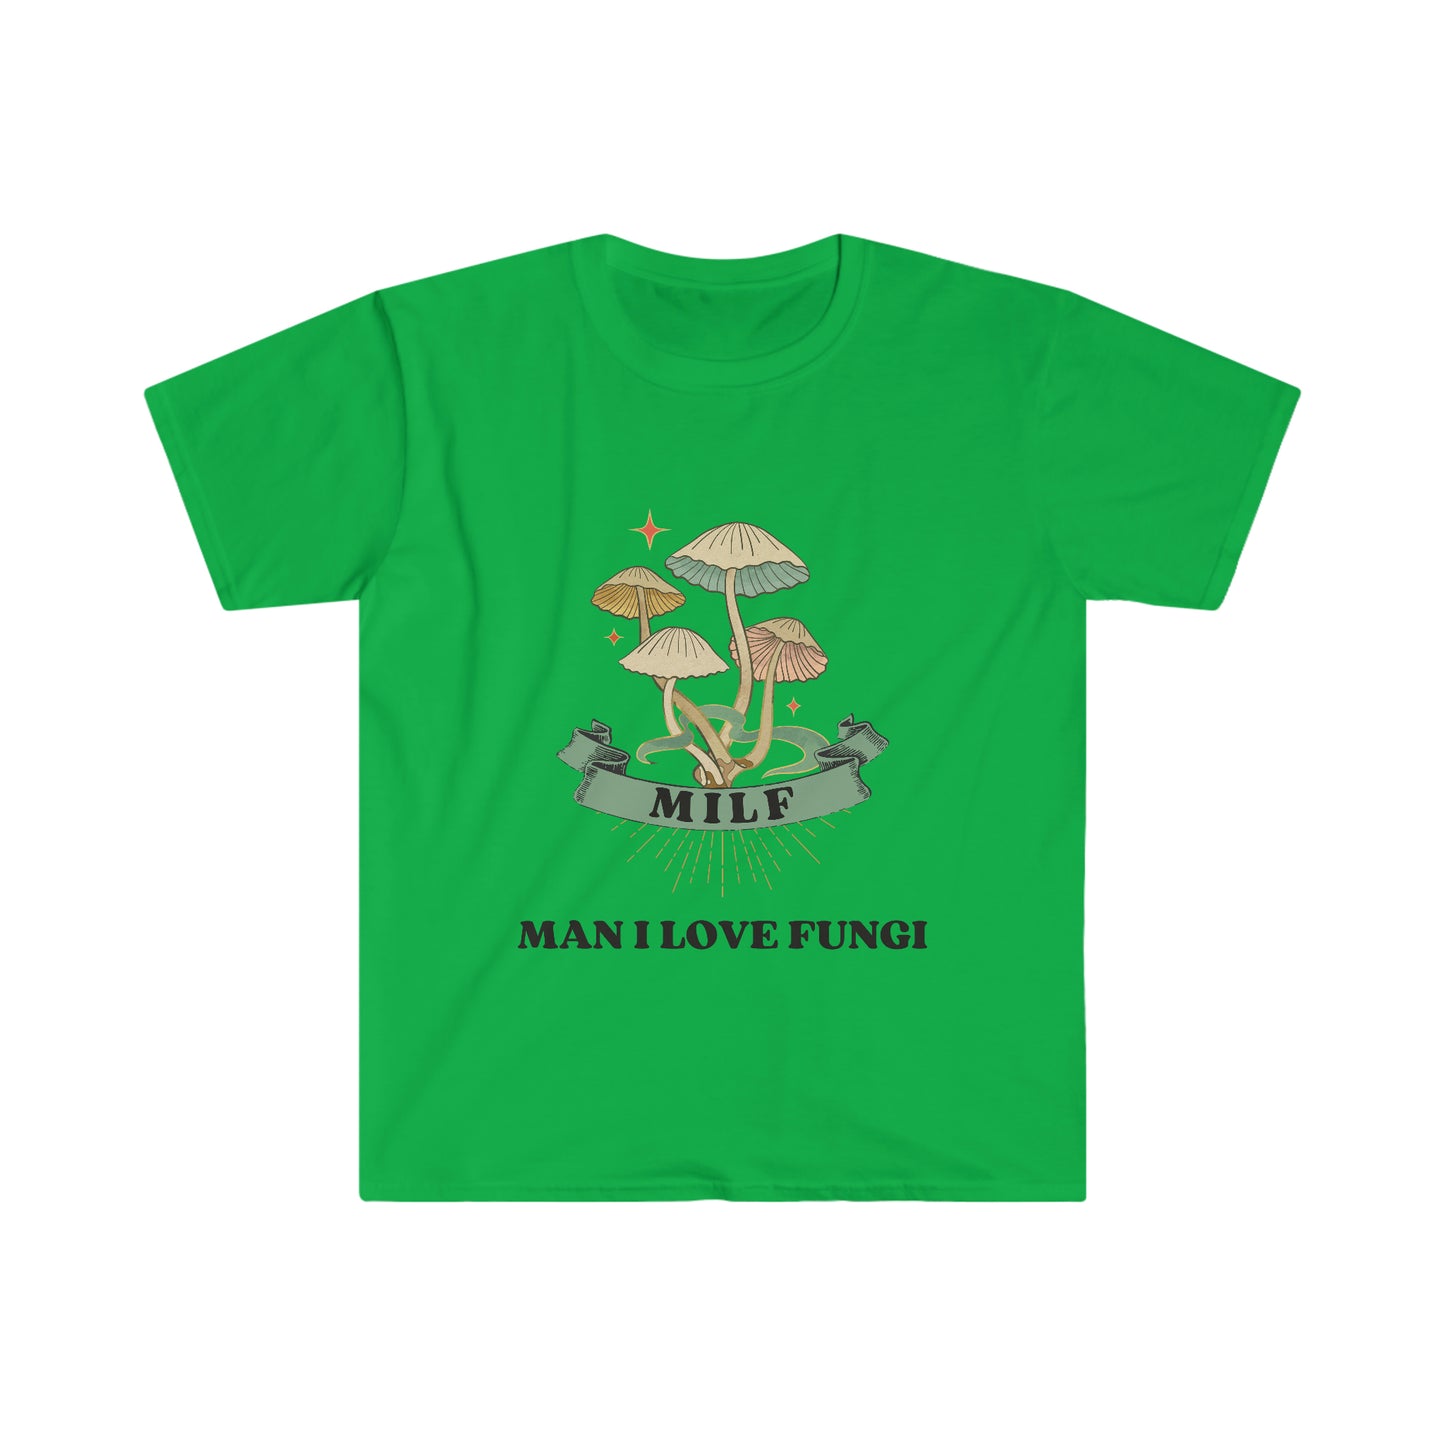 MILF Man I Love Fungi Shirt - Mushroom Lover Gift, Fun Fungi Tee, Nature Inspired Shirt